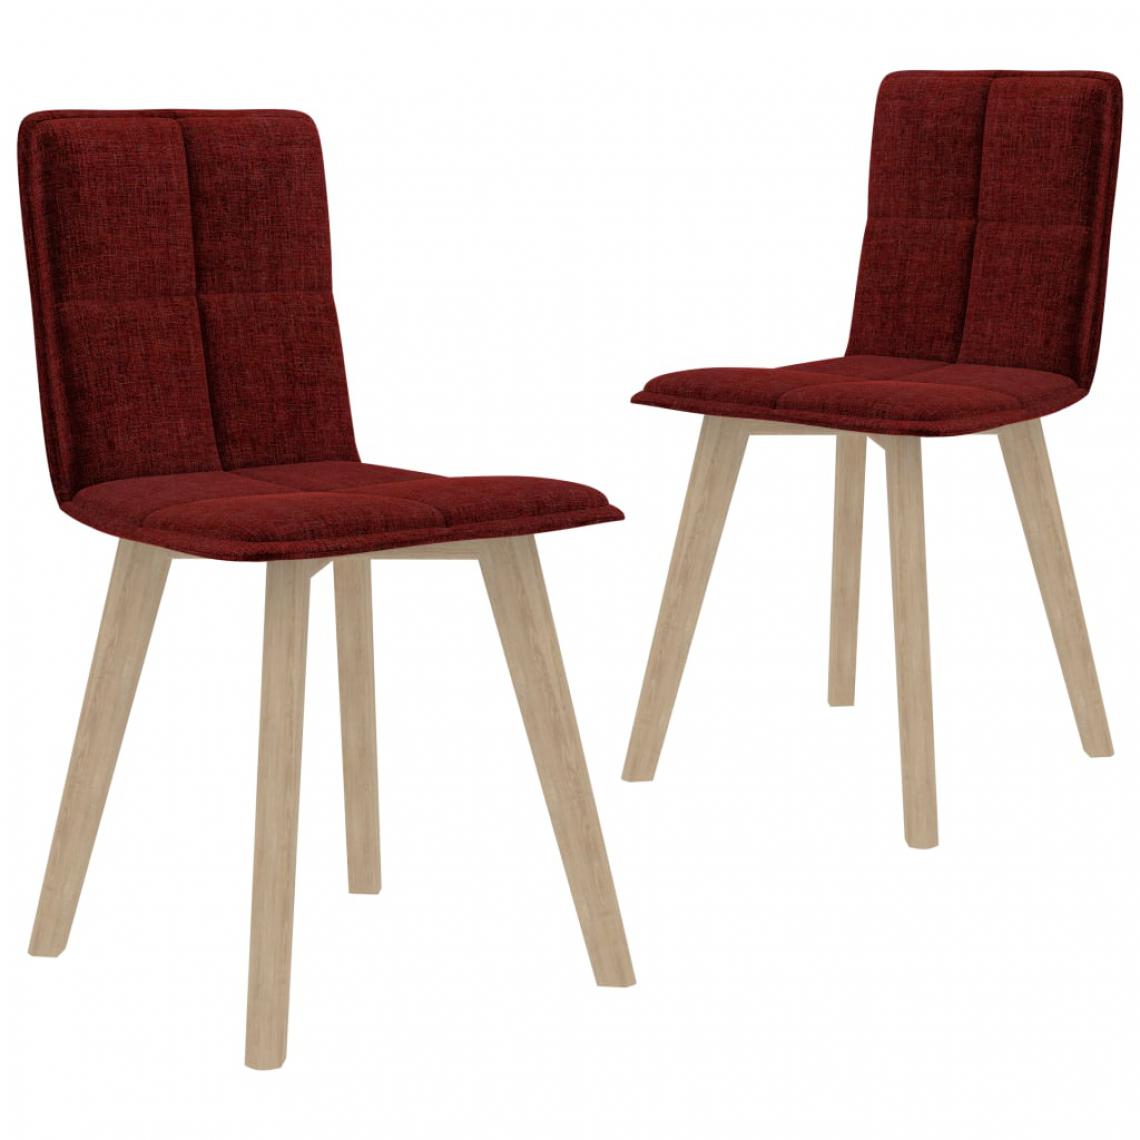 Chunhelife - Chunhelife Chaises de salle à manger 2 pcs Rouge bordeaux Tissu - Chaises